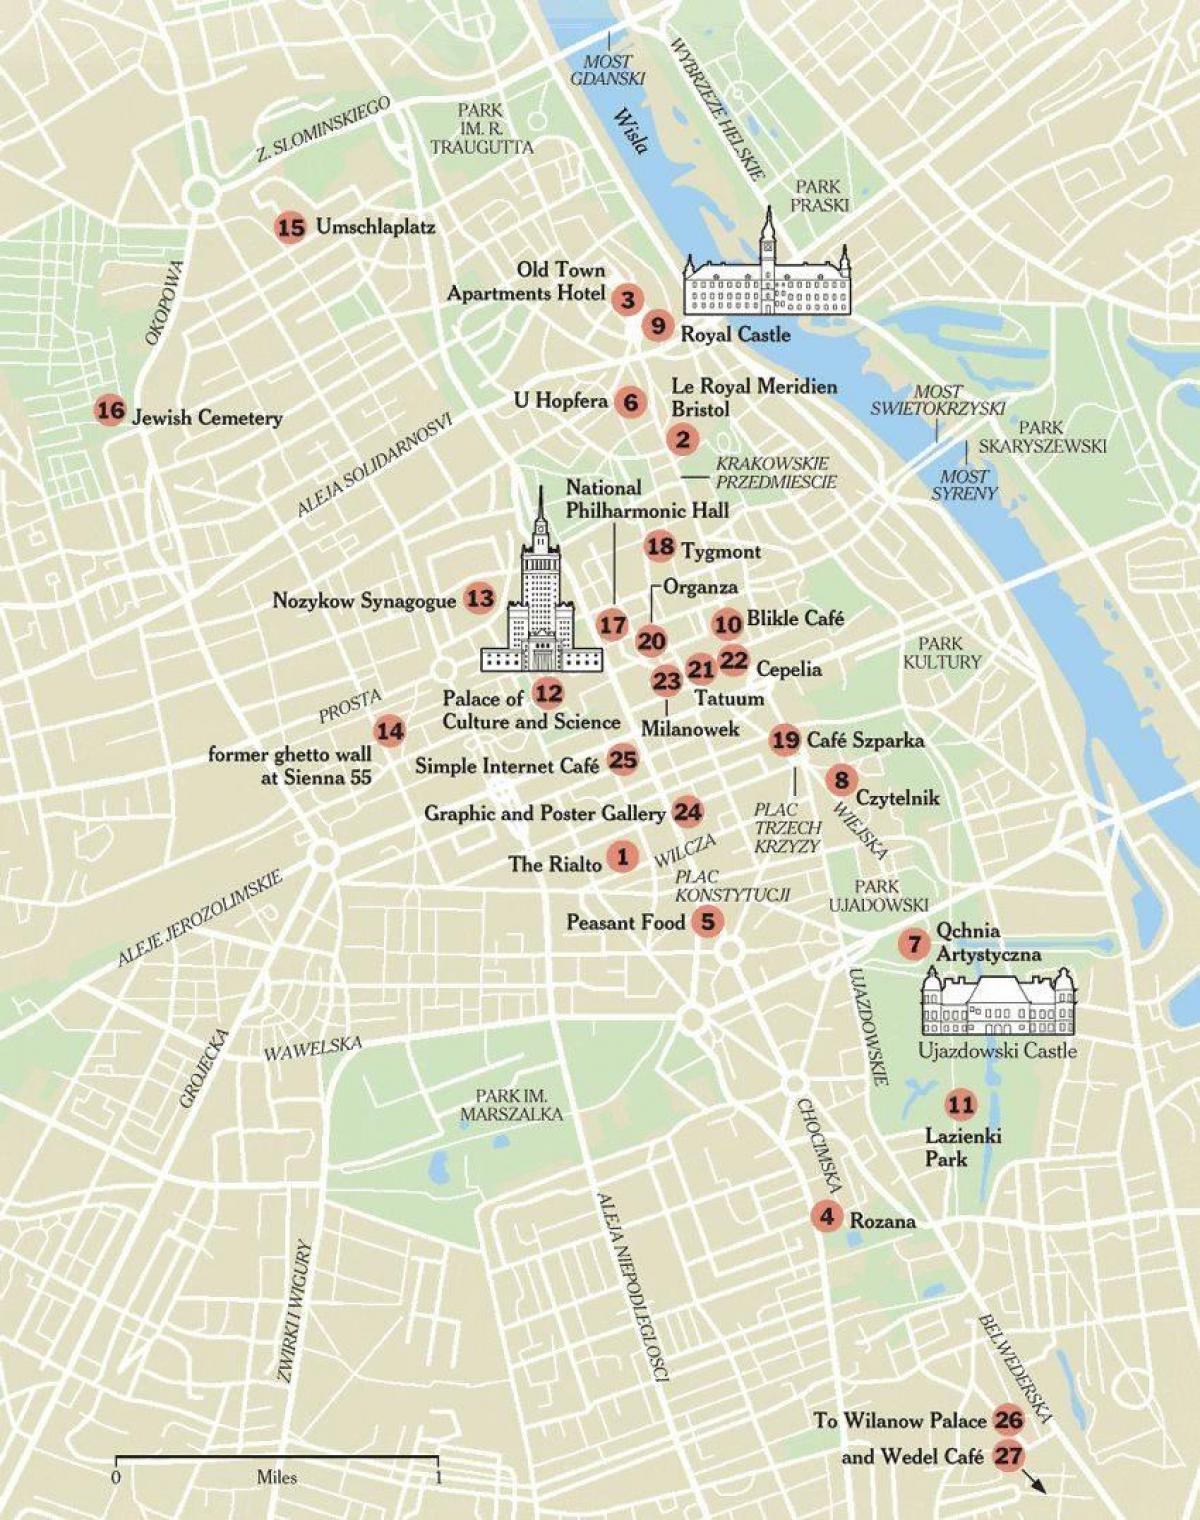 χάρτης της Βαρσοβίας με τα τουριστικά αξιοθέατα